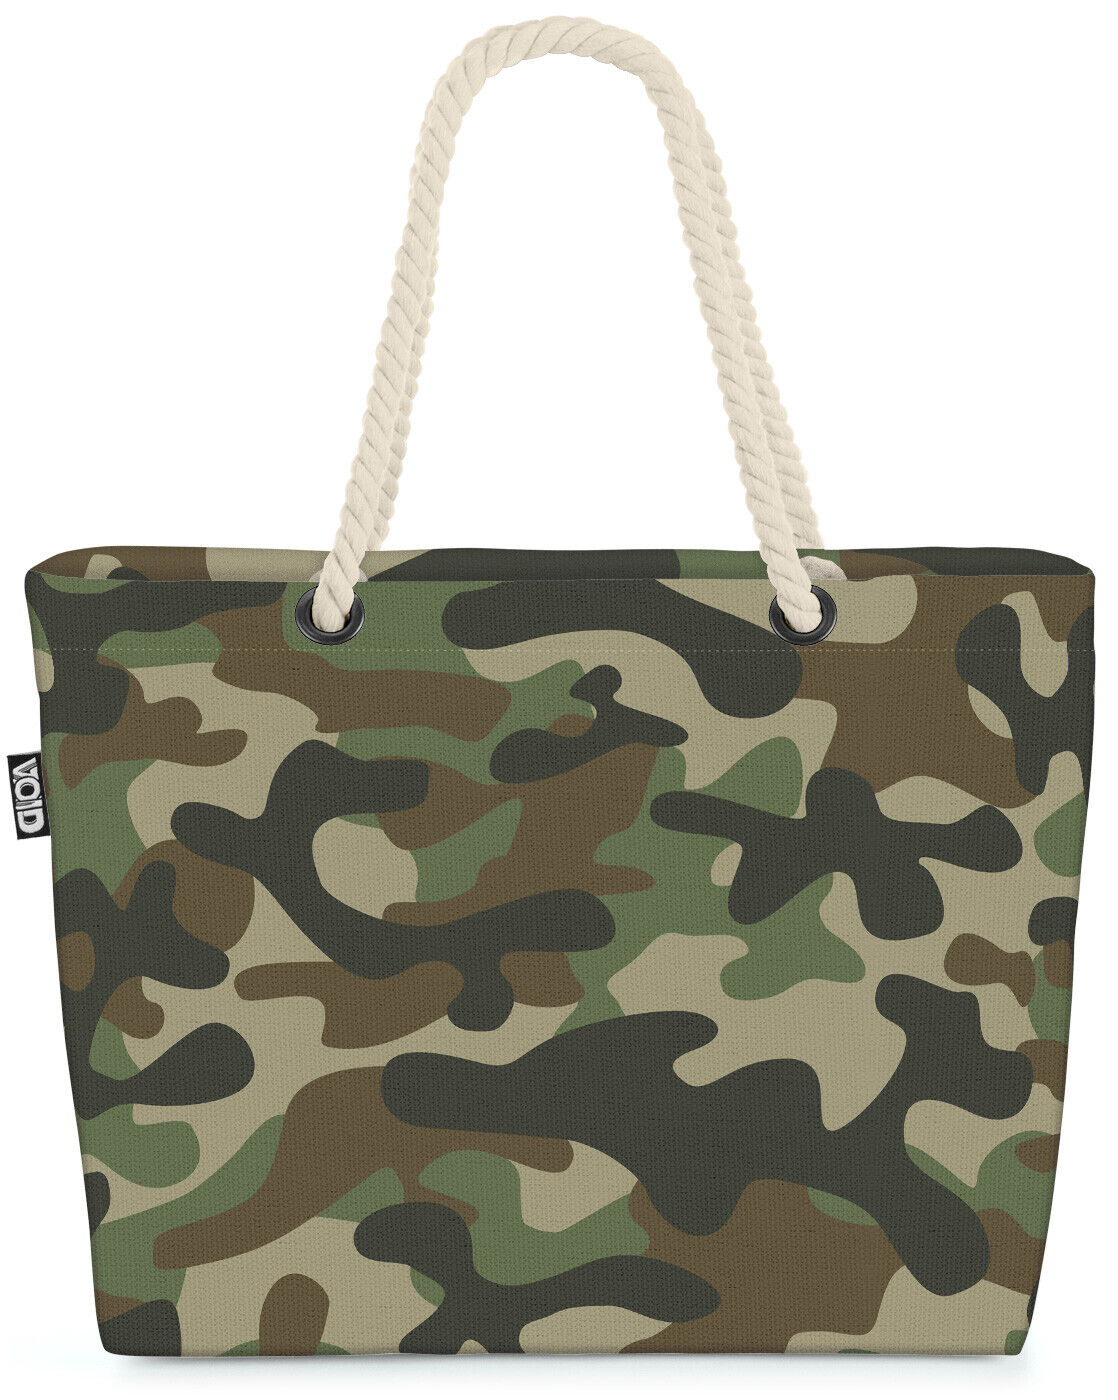 VOID Tasche Camouflage Muster Grün Tarn-Kleidung Tarn-Farben Militär